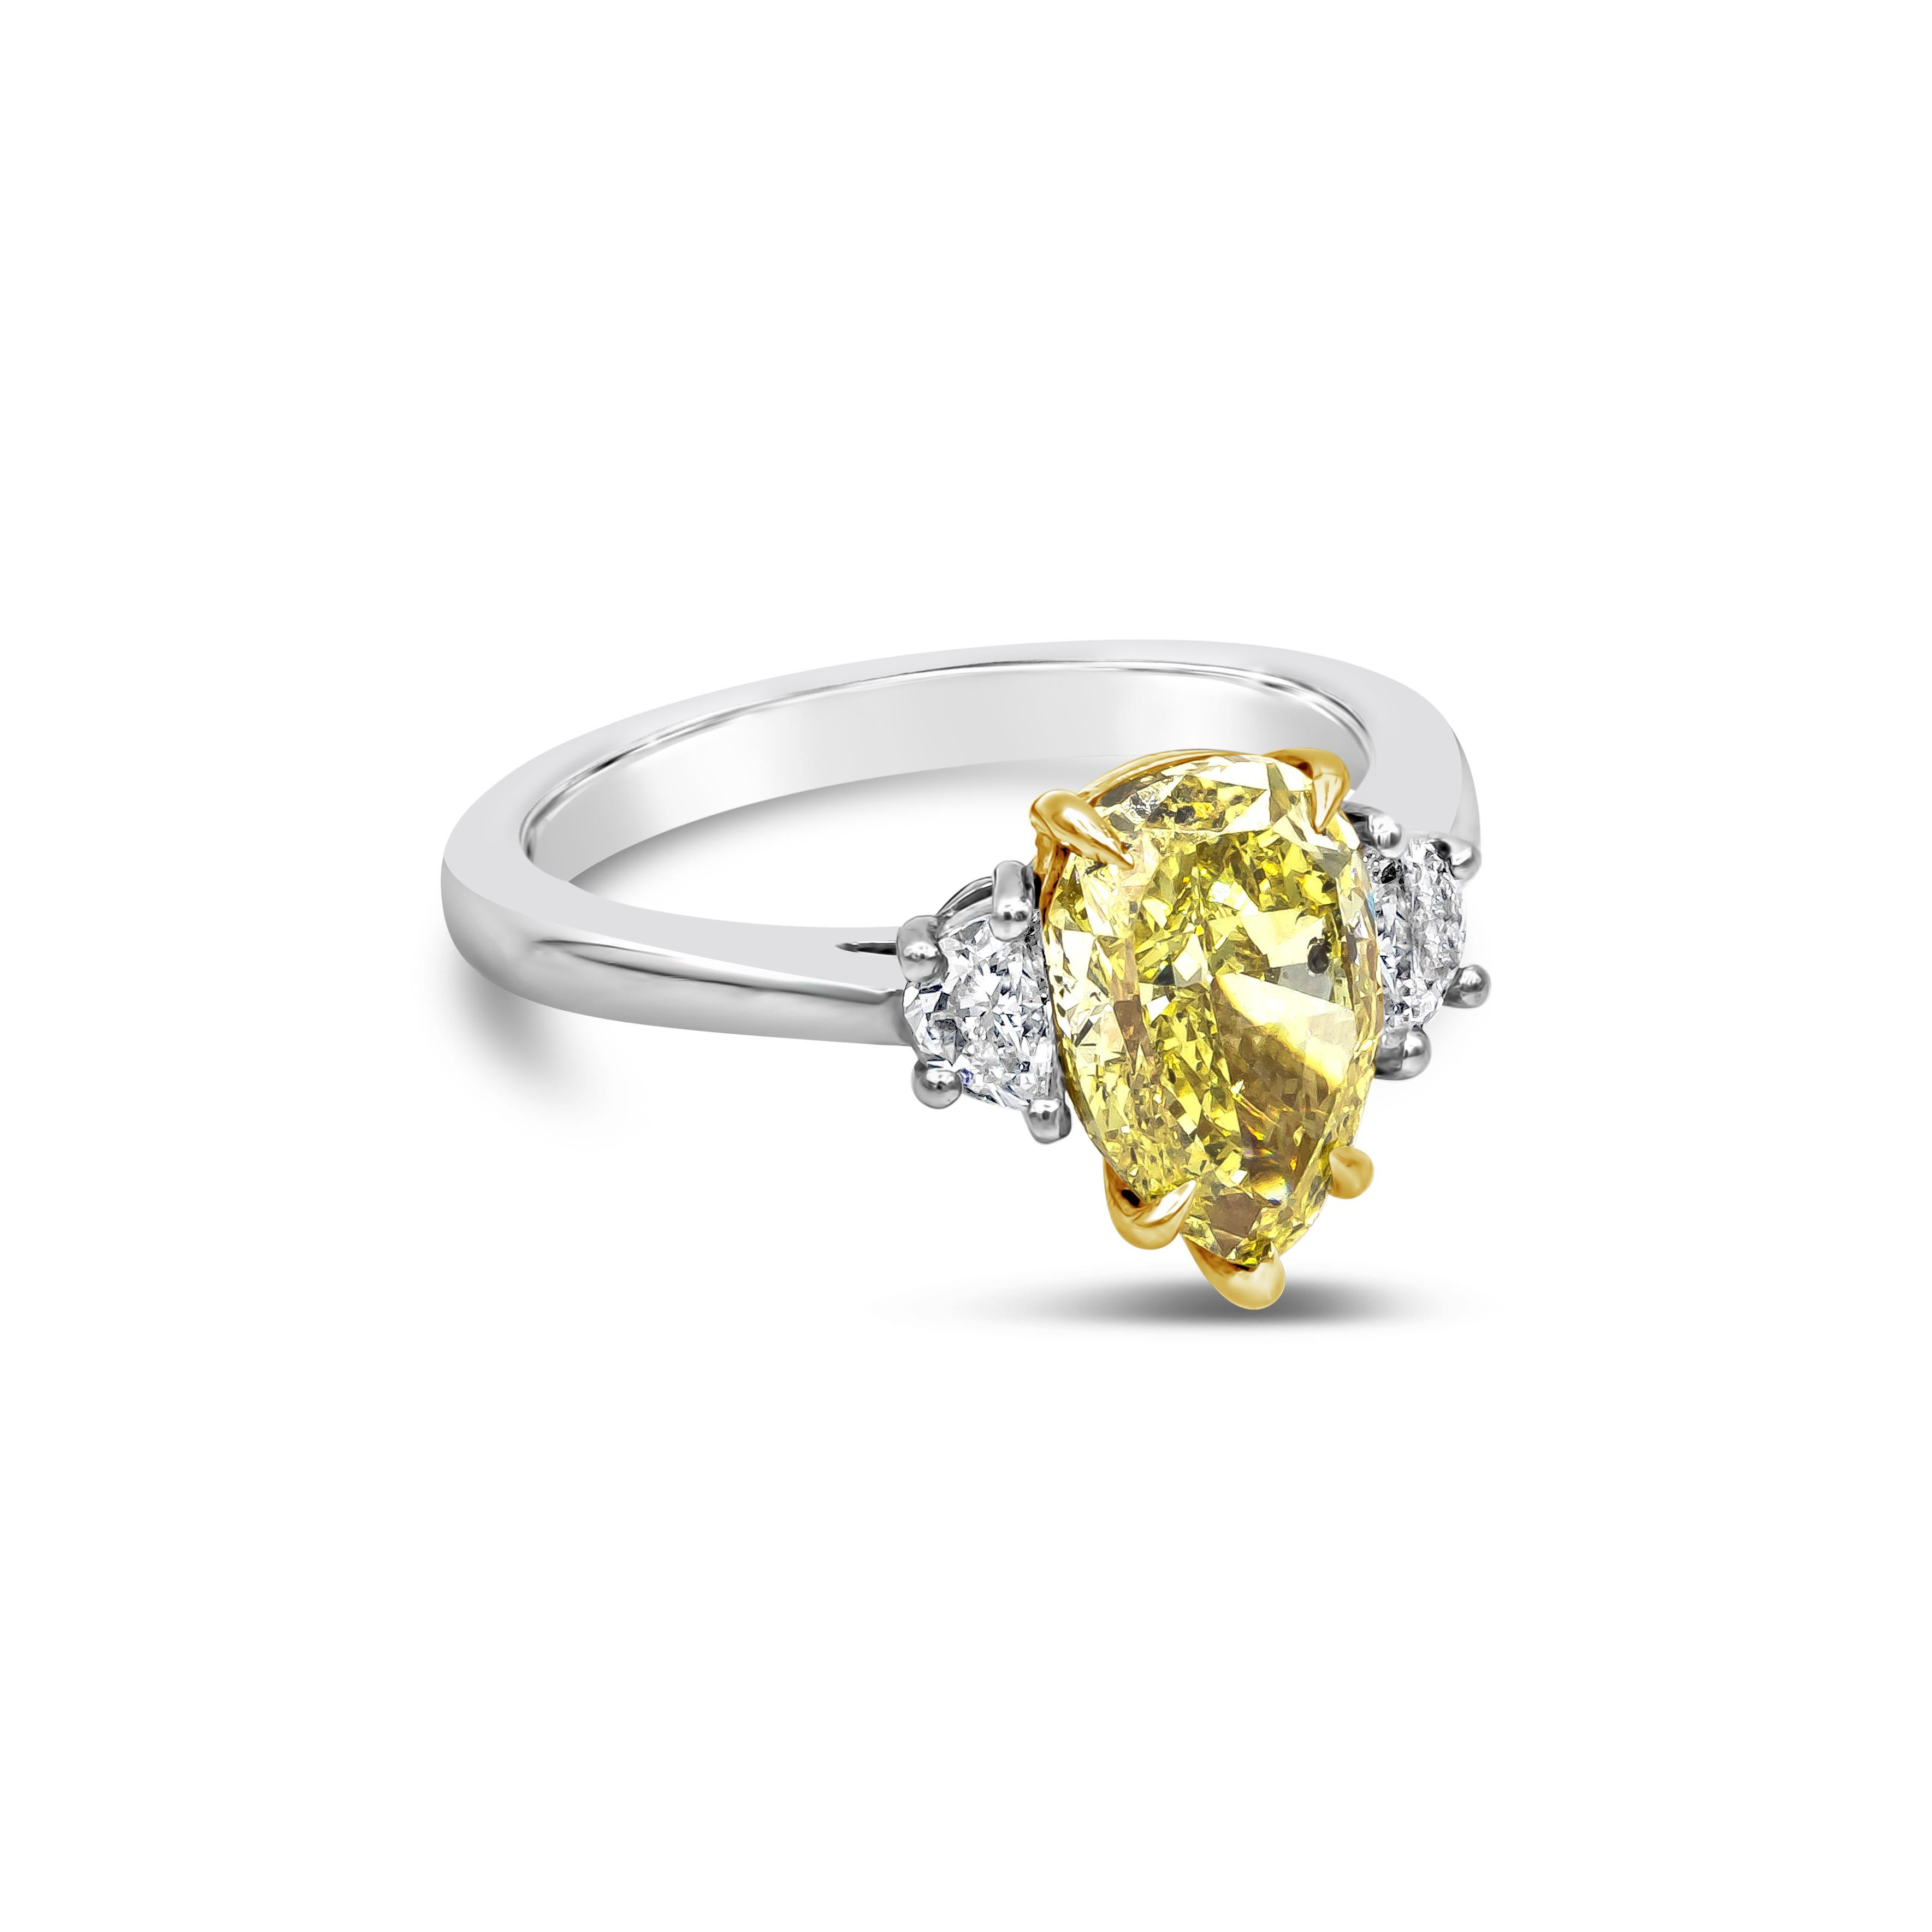 Dieser elegante und atemberaubende Drei-Stein-Verlobungsring präsentiert einen 2,18 Karat birnenförmigen Diamanten in der Mitte, der von GIA als intensiv gelb zertifiziert ist und in einer fünfzackigen Korbfassung aus Gelbgold gefasst ist. Das